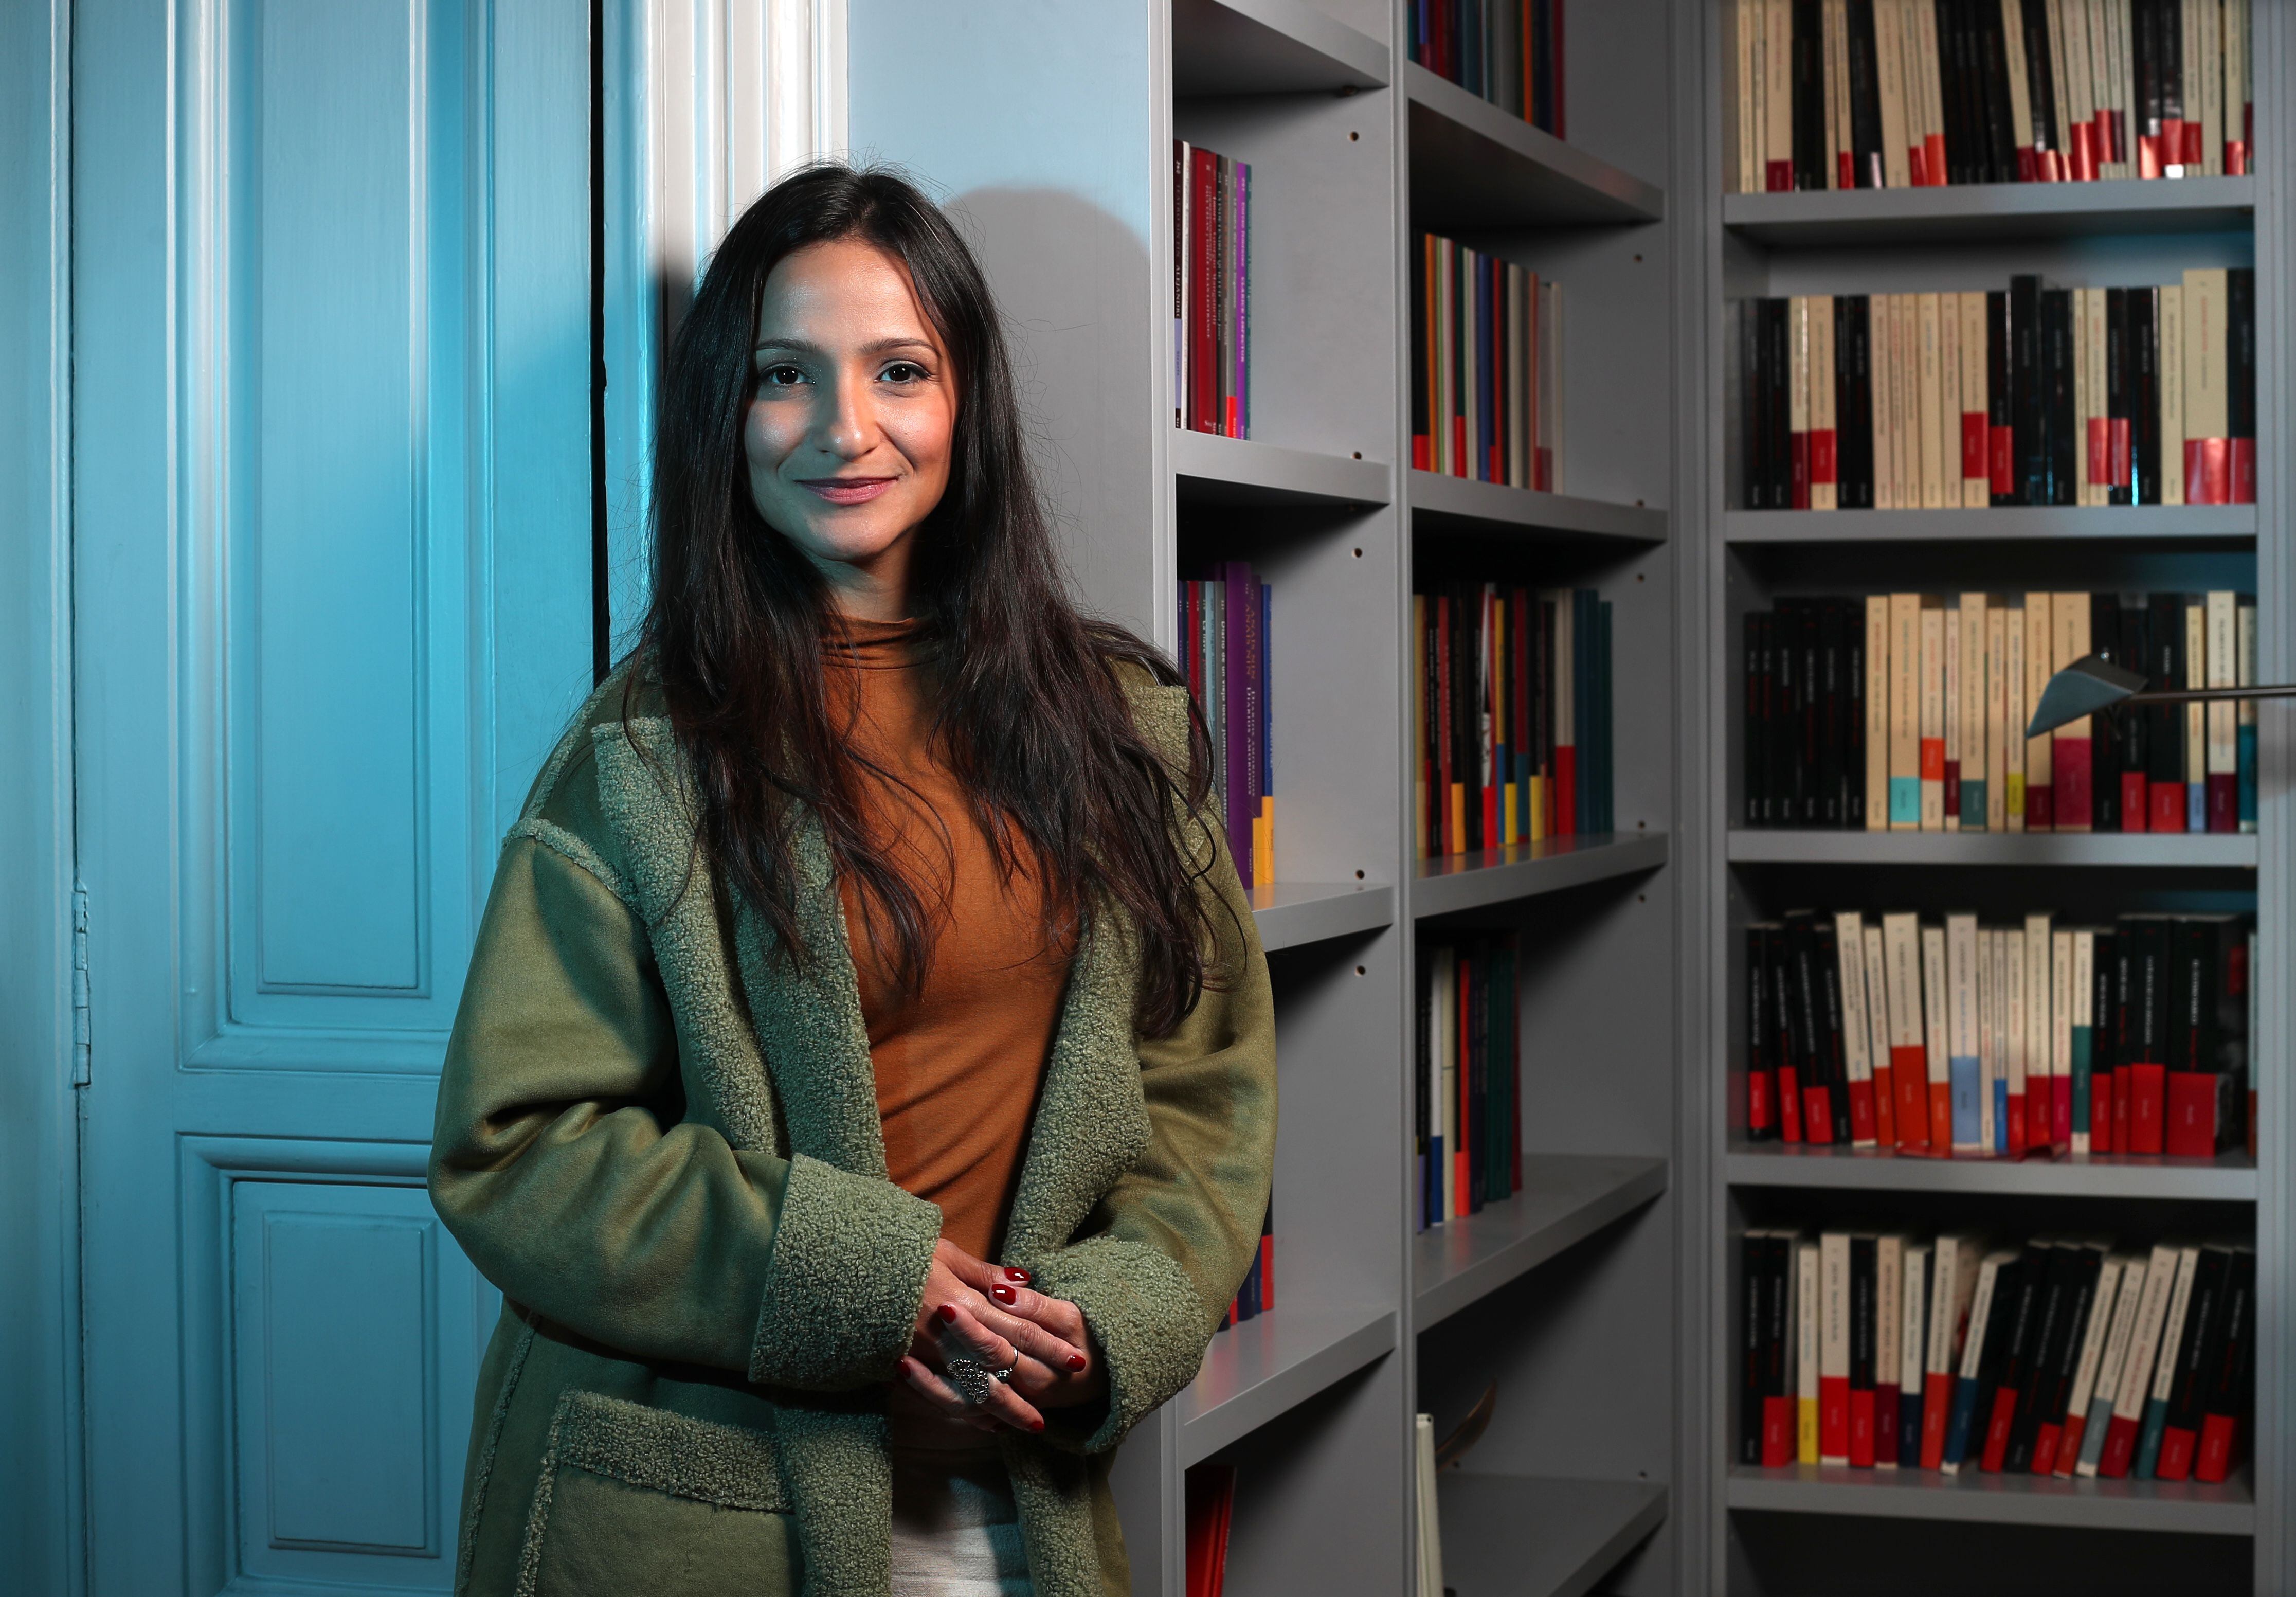 La escritora venezolana María Elena Morán, ganadora del Premio de la novela Café Gijón 2022.